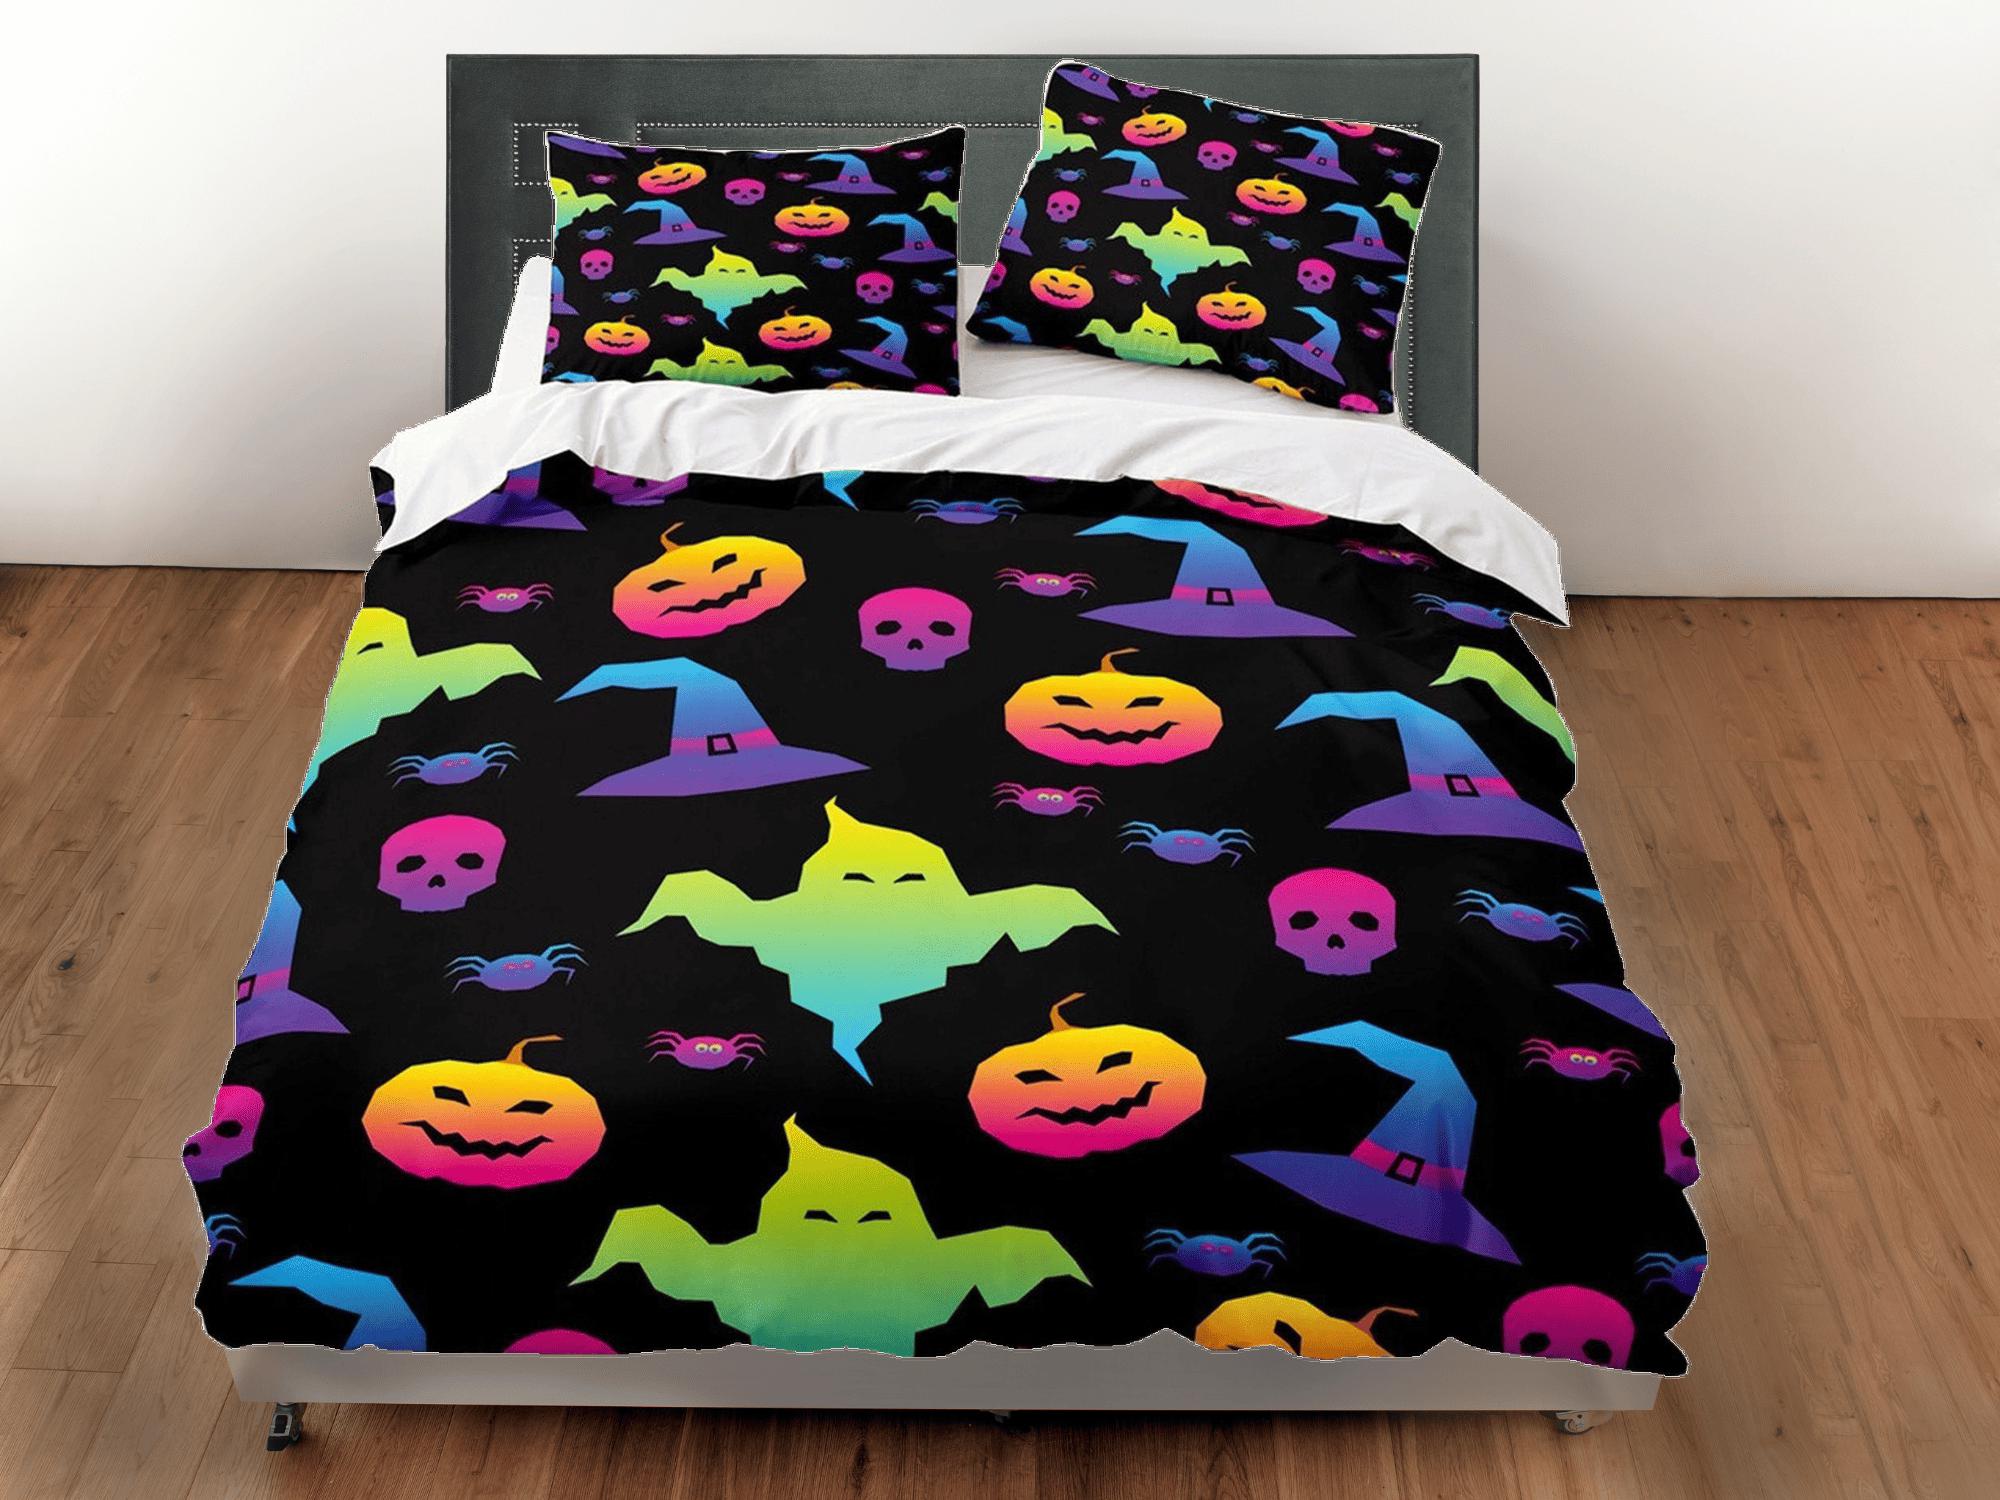 daintyduvet 90s neon cute halloween full bedding & pillowcase, duvet cover set dorm bedding, halloween decor, nursery toddler bedding, halloween gift